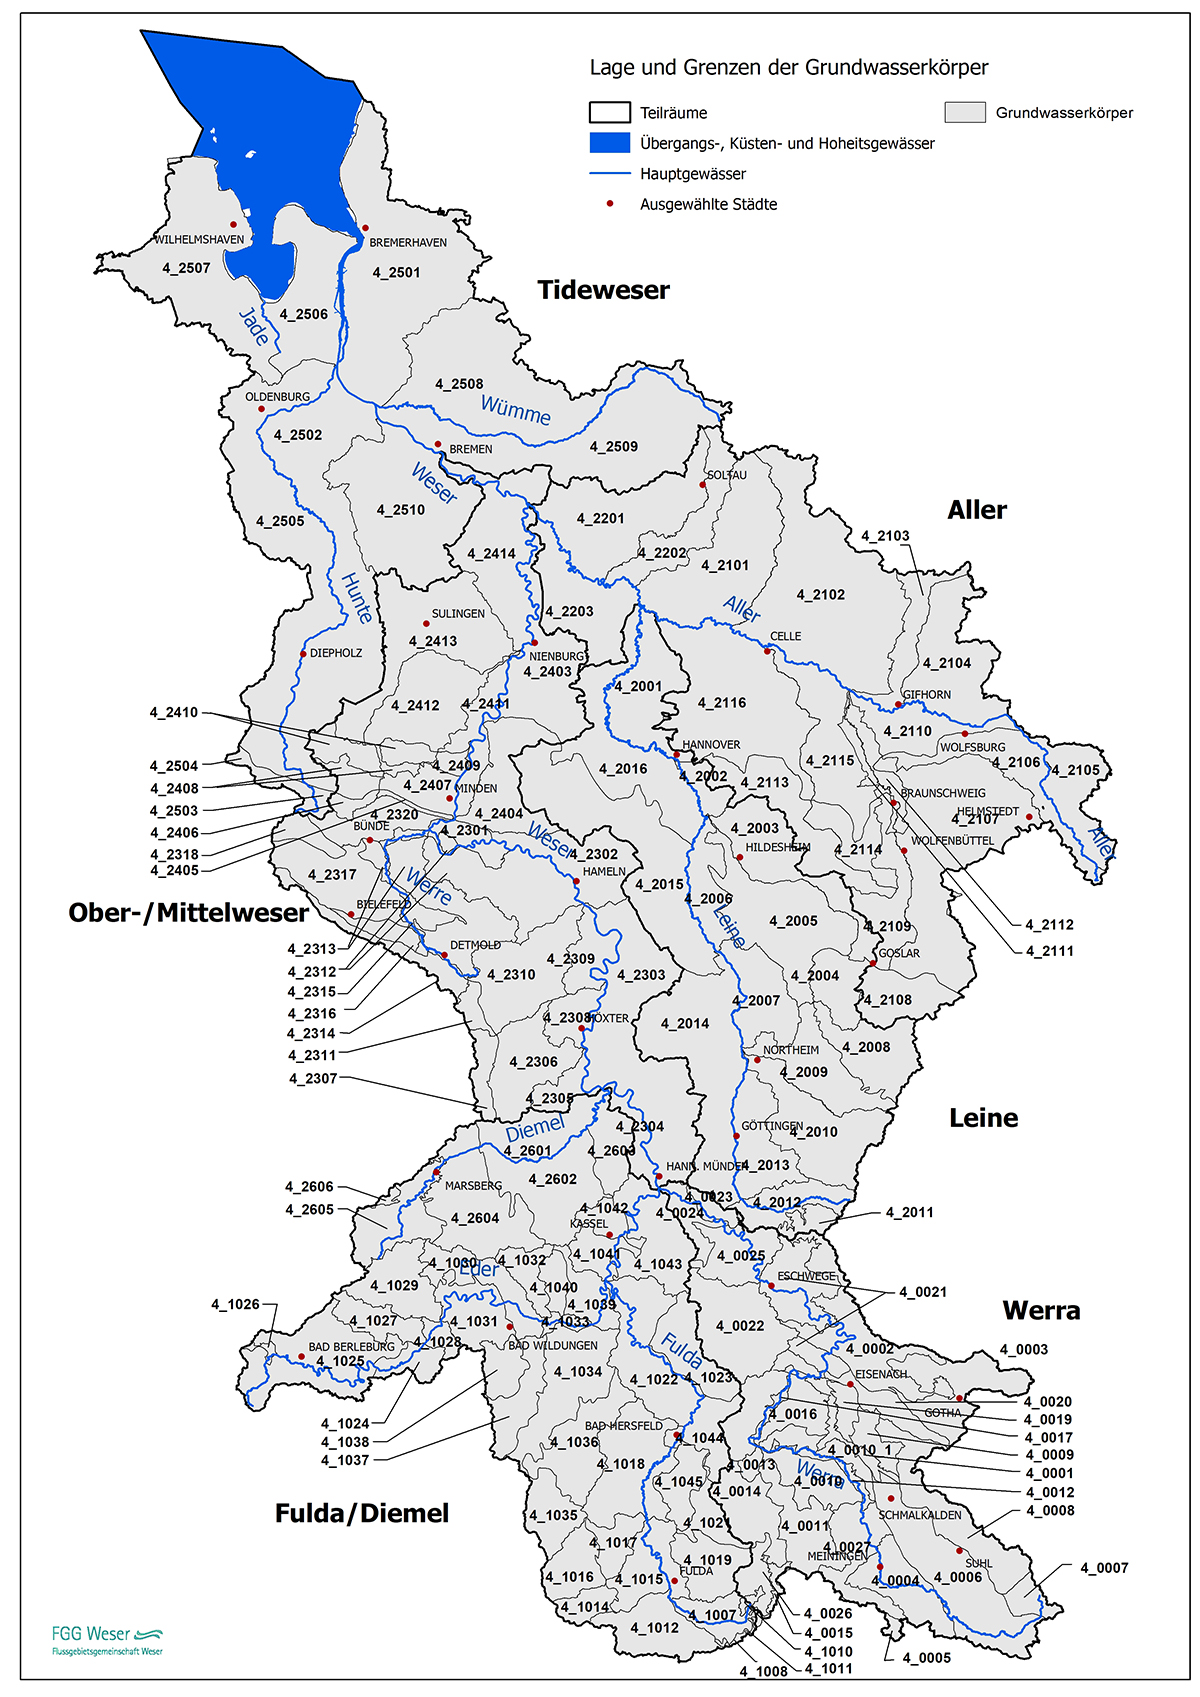 Grundwasserkörper in der Flussgebietseinheit Weser (FGG Weser, 2021)